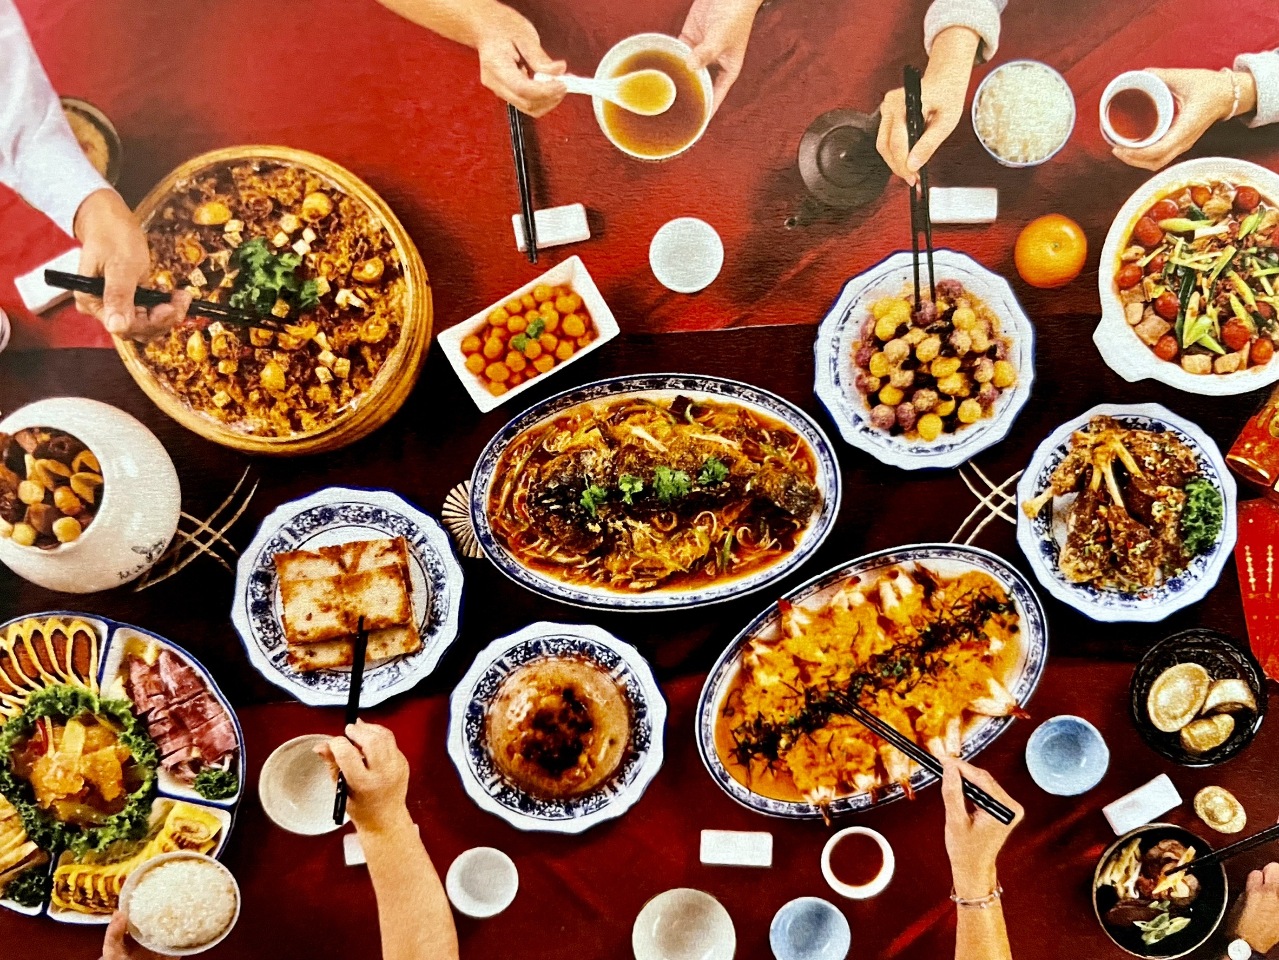 蔥 薑 蒜及醬油 可說是台灣餐桌上的主要味道